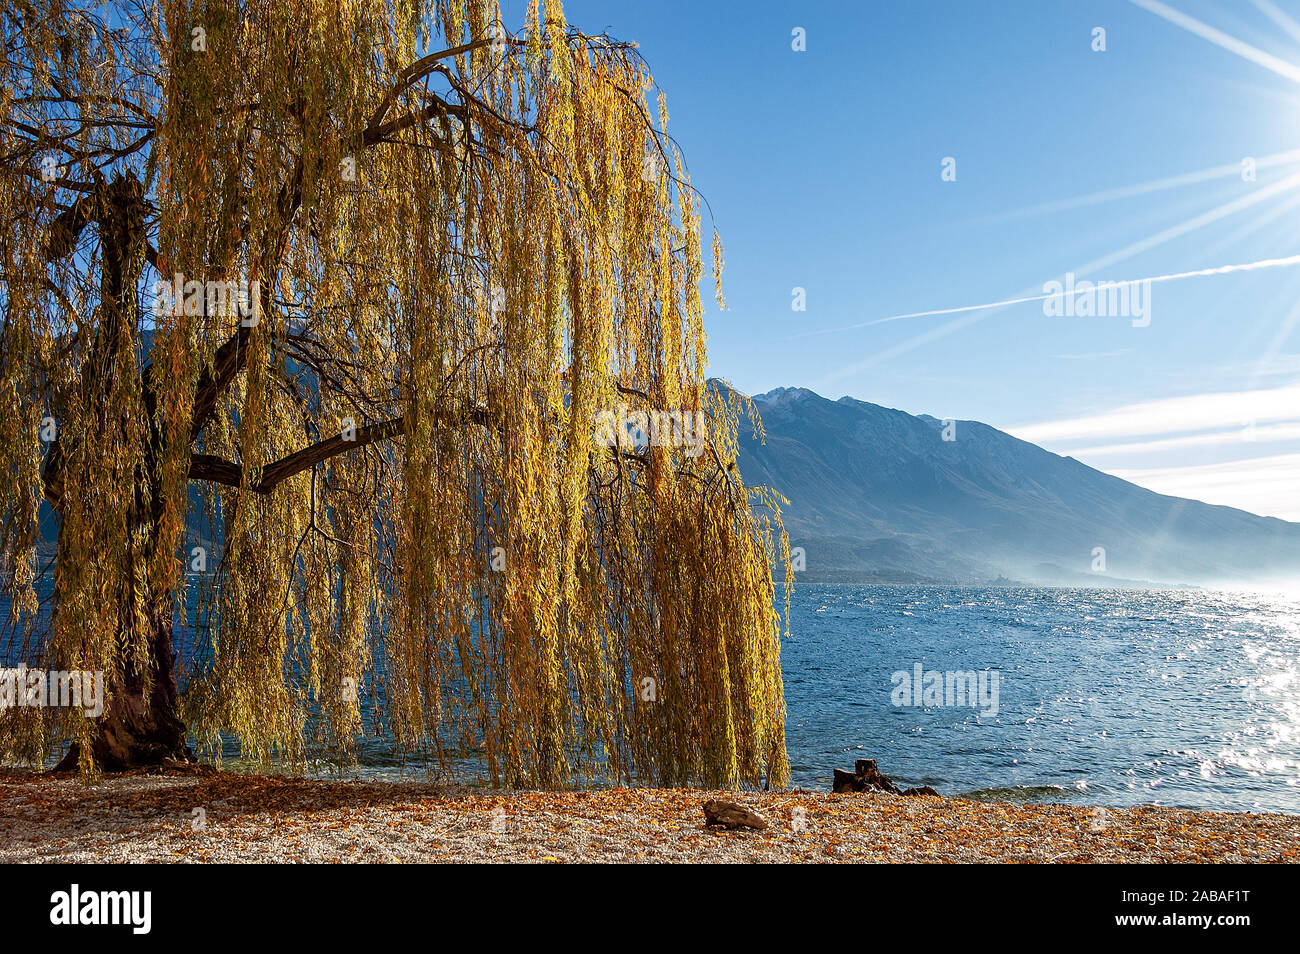 Orange et jaune arbre saule pleureur (Salix babylonica) en hiver. Plage du village de Limone sul Garda, avec le lac et le Mont Baldo Banque D'Images